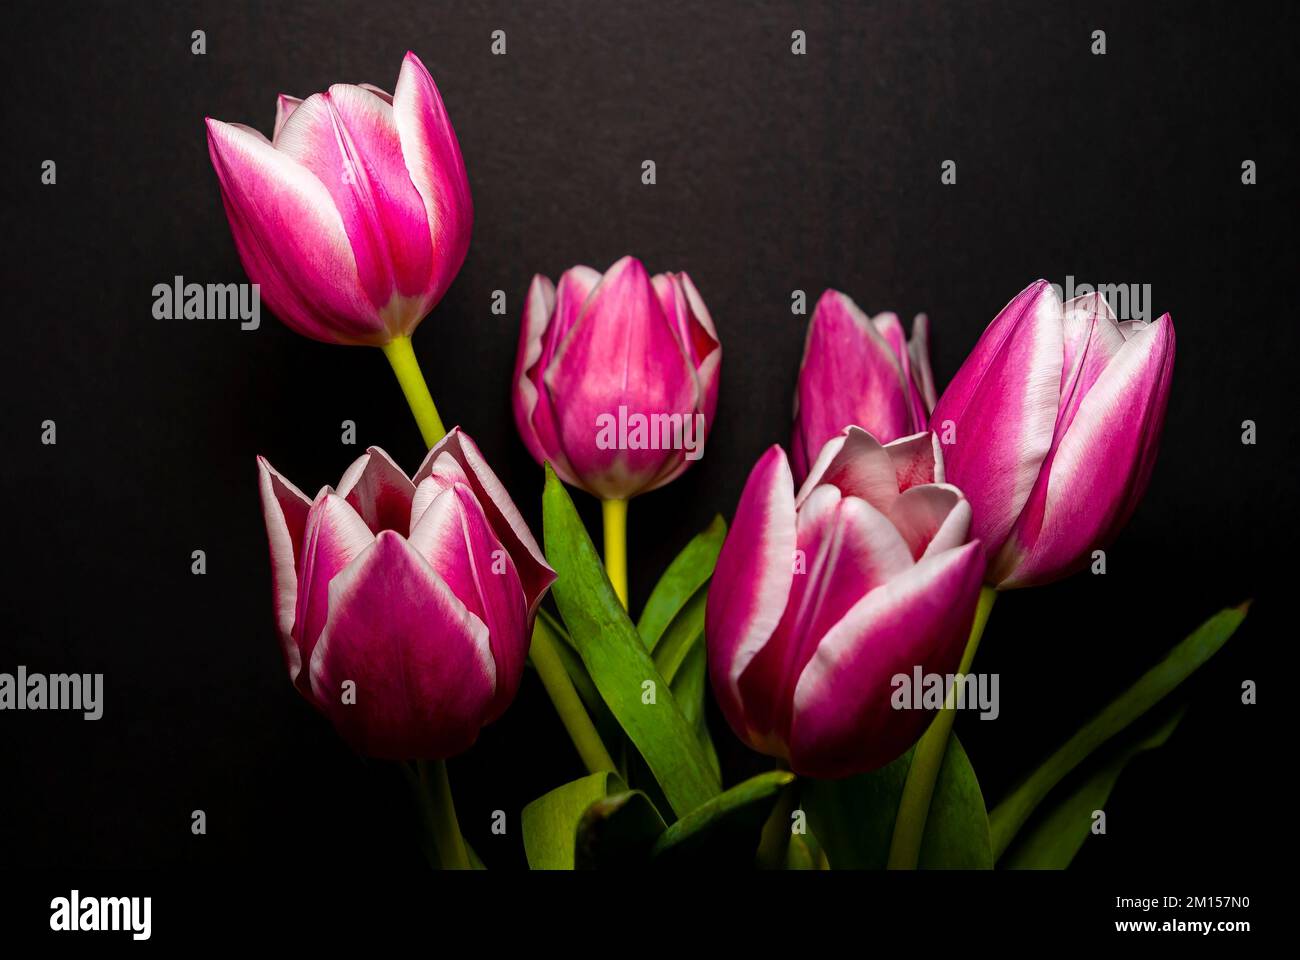 Cut flowers in a vase, bouquet of tulips set against a black background. Schnittblumen in einer Vase, Strauß Tulpen vor schwarzem Hintergrund freigest Stock Photo